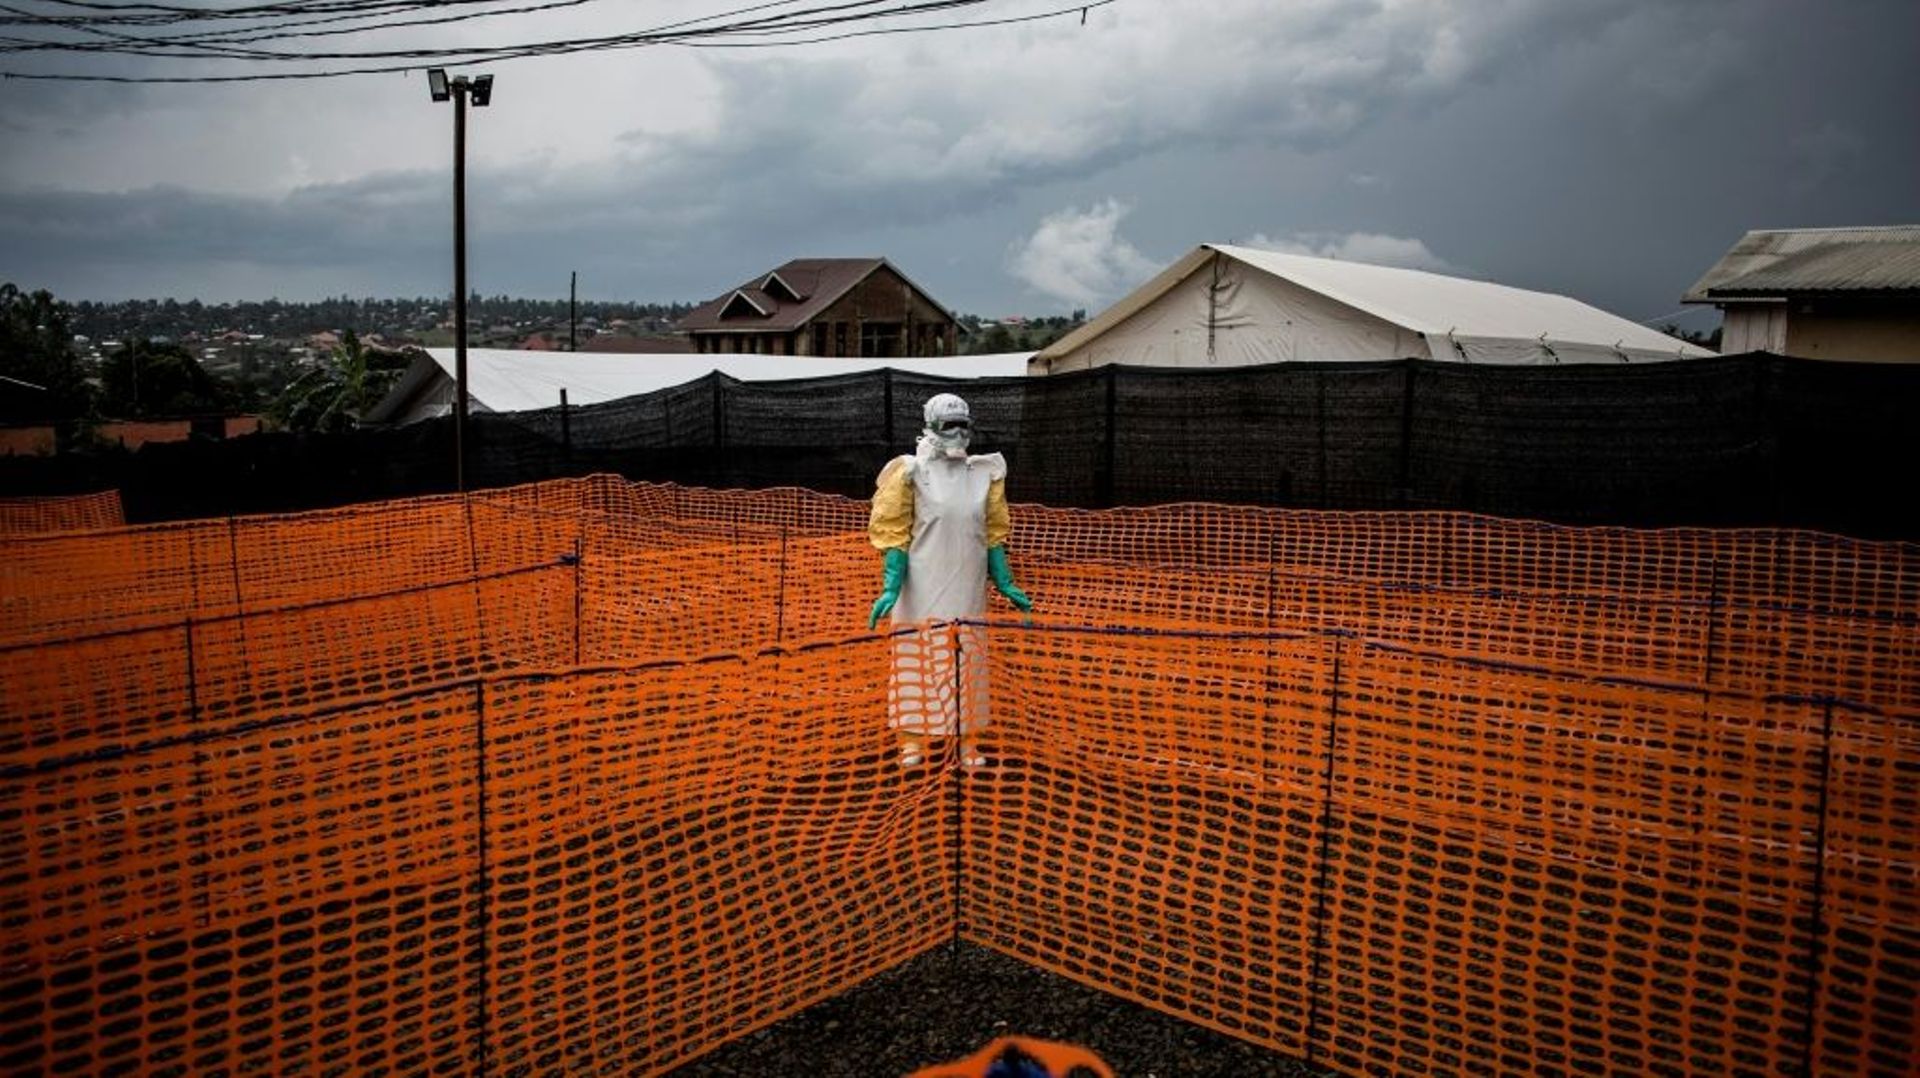 rdc-la-riposte-ne-parvient-pas-a-maitriser-l-epidemie-d-ebola-selon-msf